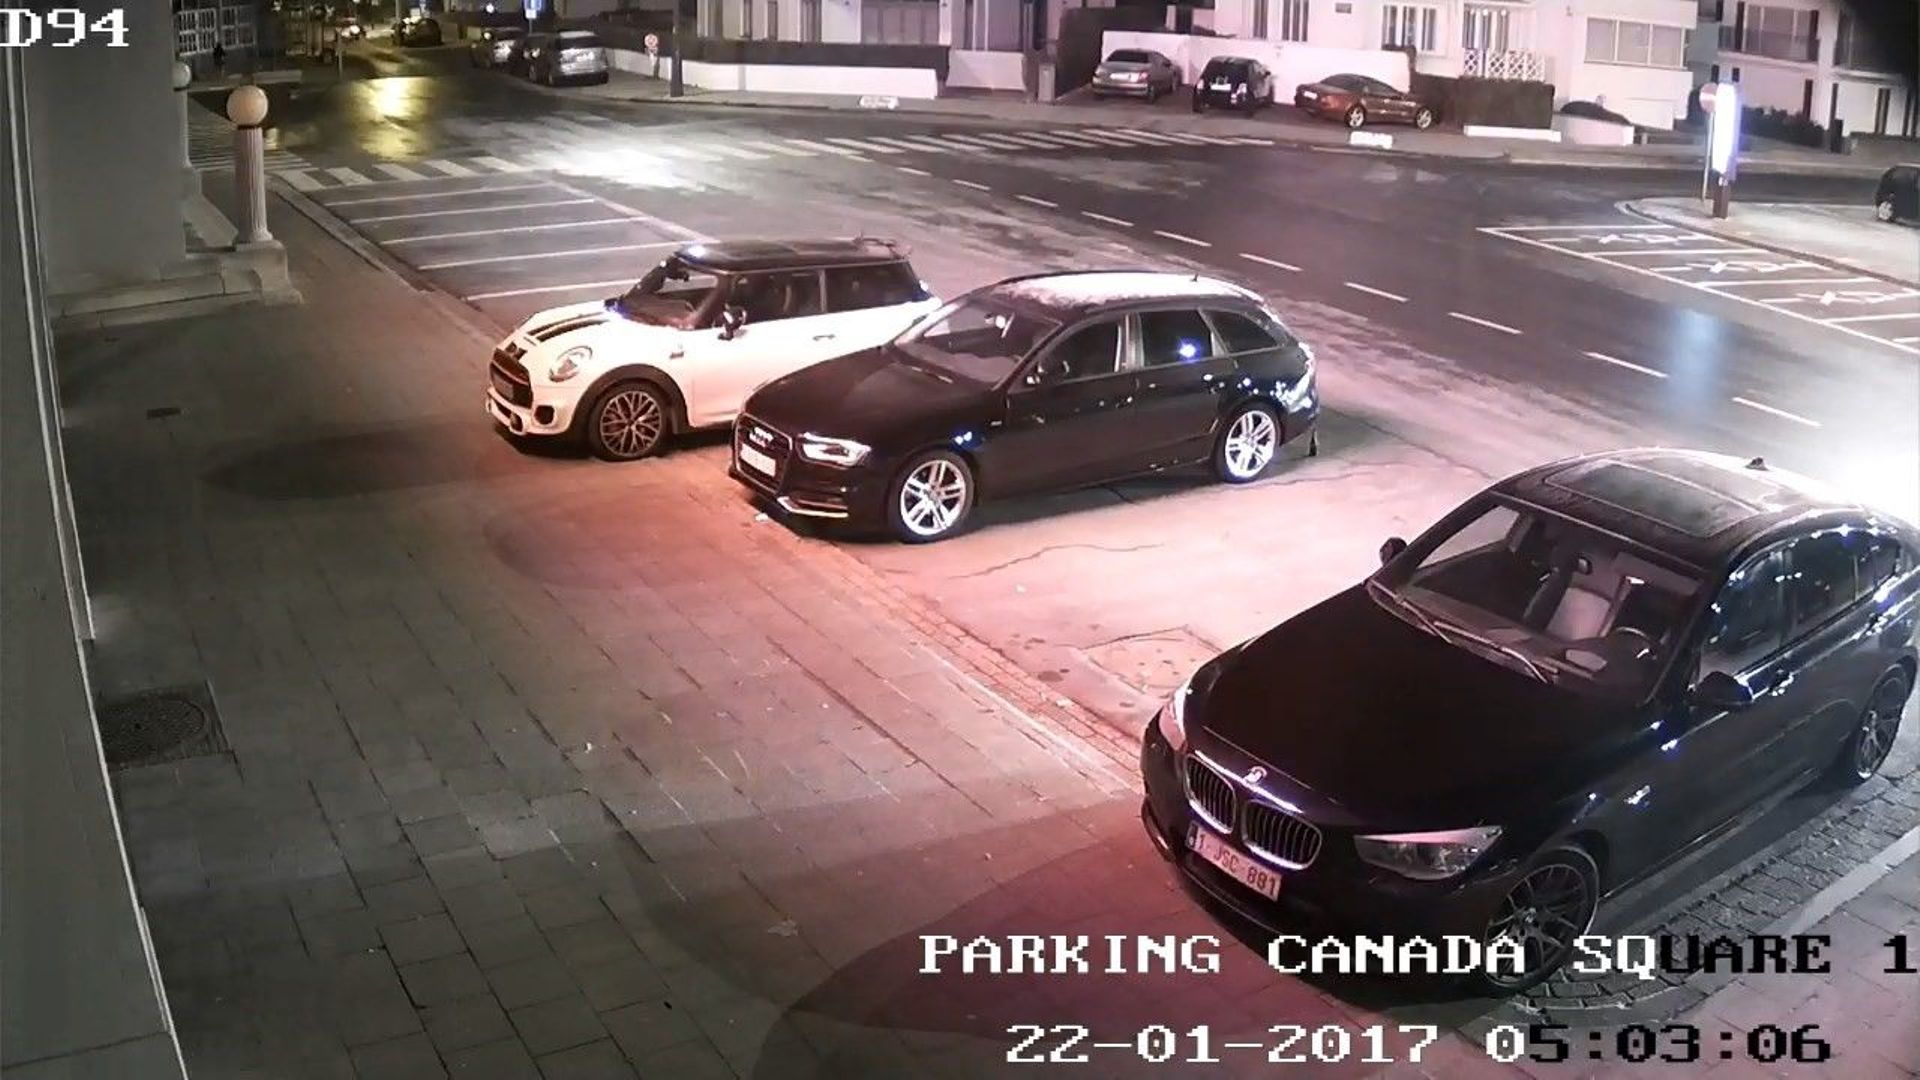 Une image capturée par les caméras de surveillance lors de l'assassinat de Sophie Muylle.